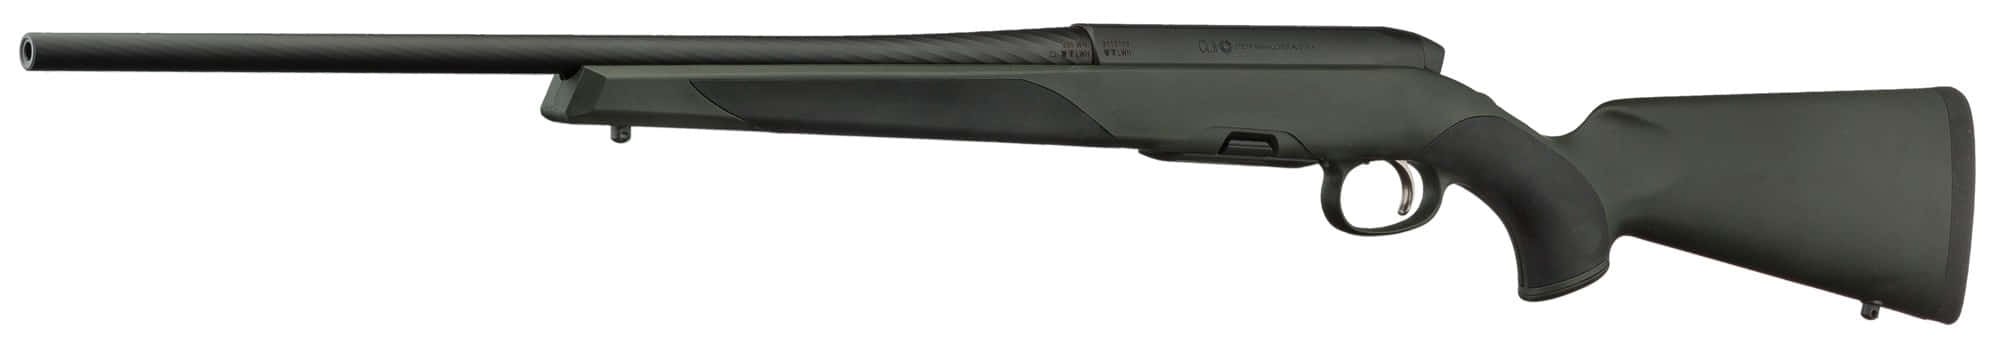 SMM13436-3 Carabine STEYR SM12 SX - Armement séparé